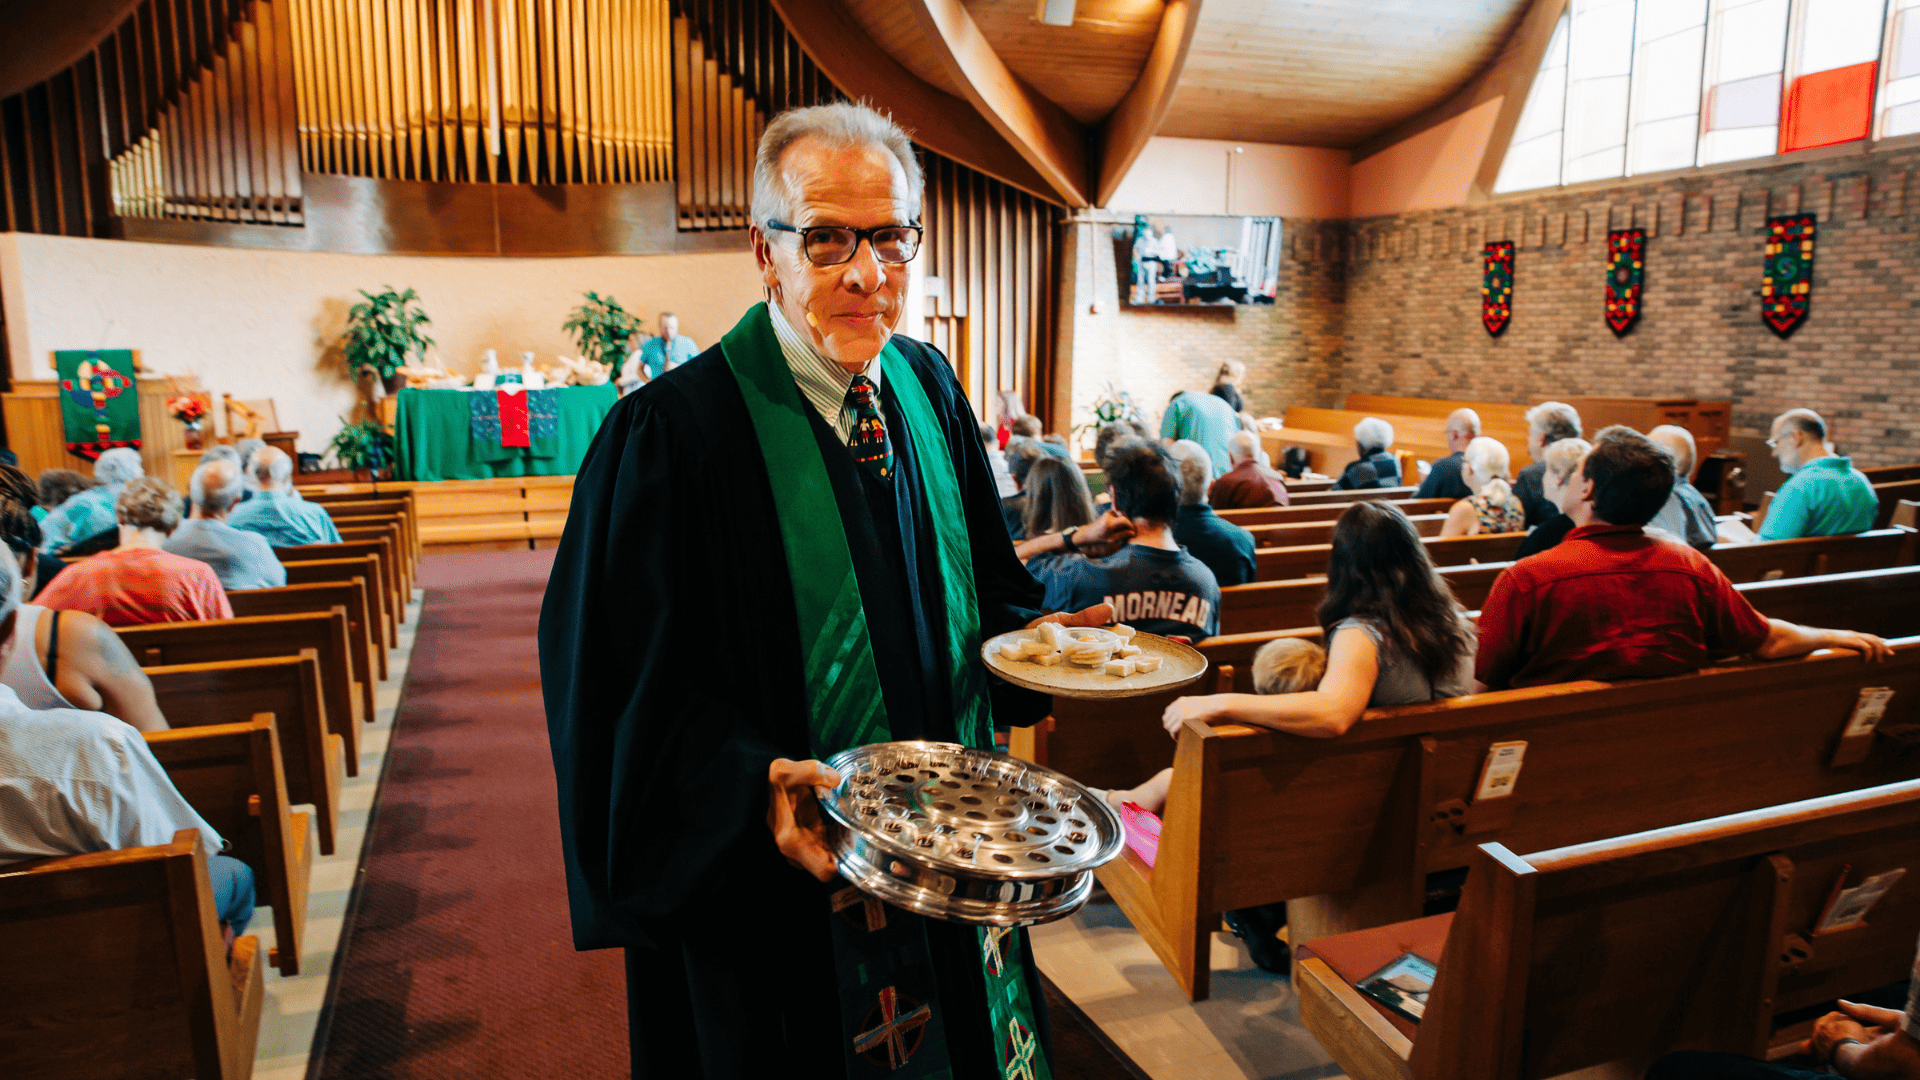 Rev. Richard D. Buller Retirement Party